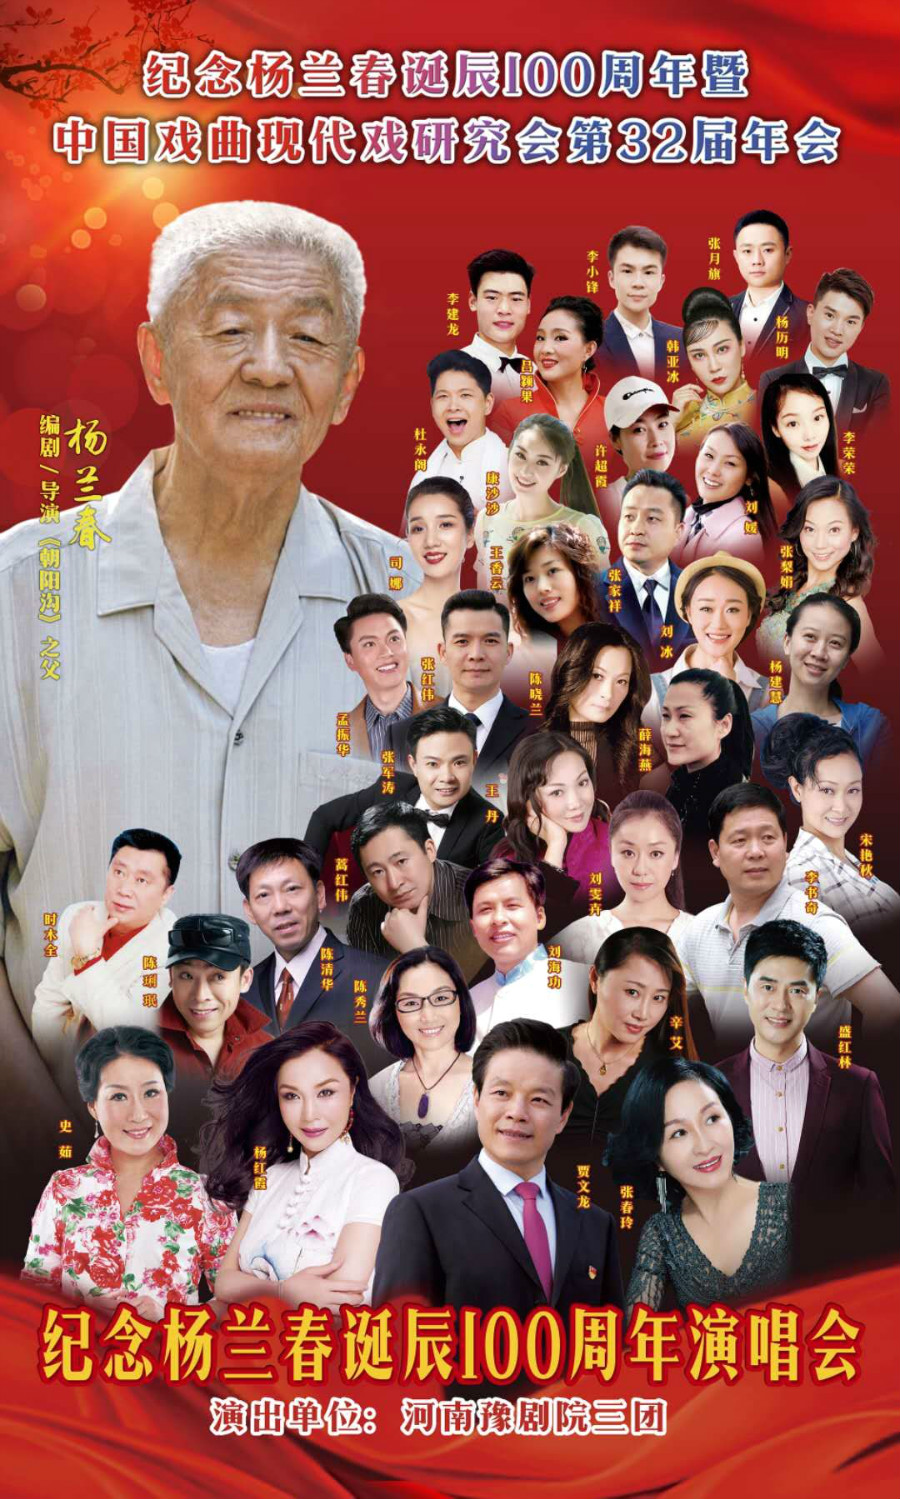 纪念杨兰春诞辰100周年暨中国戏曲现代戏研究会第32届年会在郑州举行